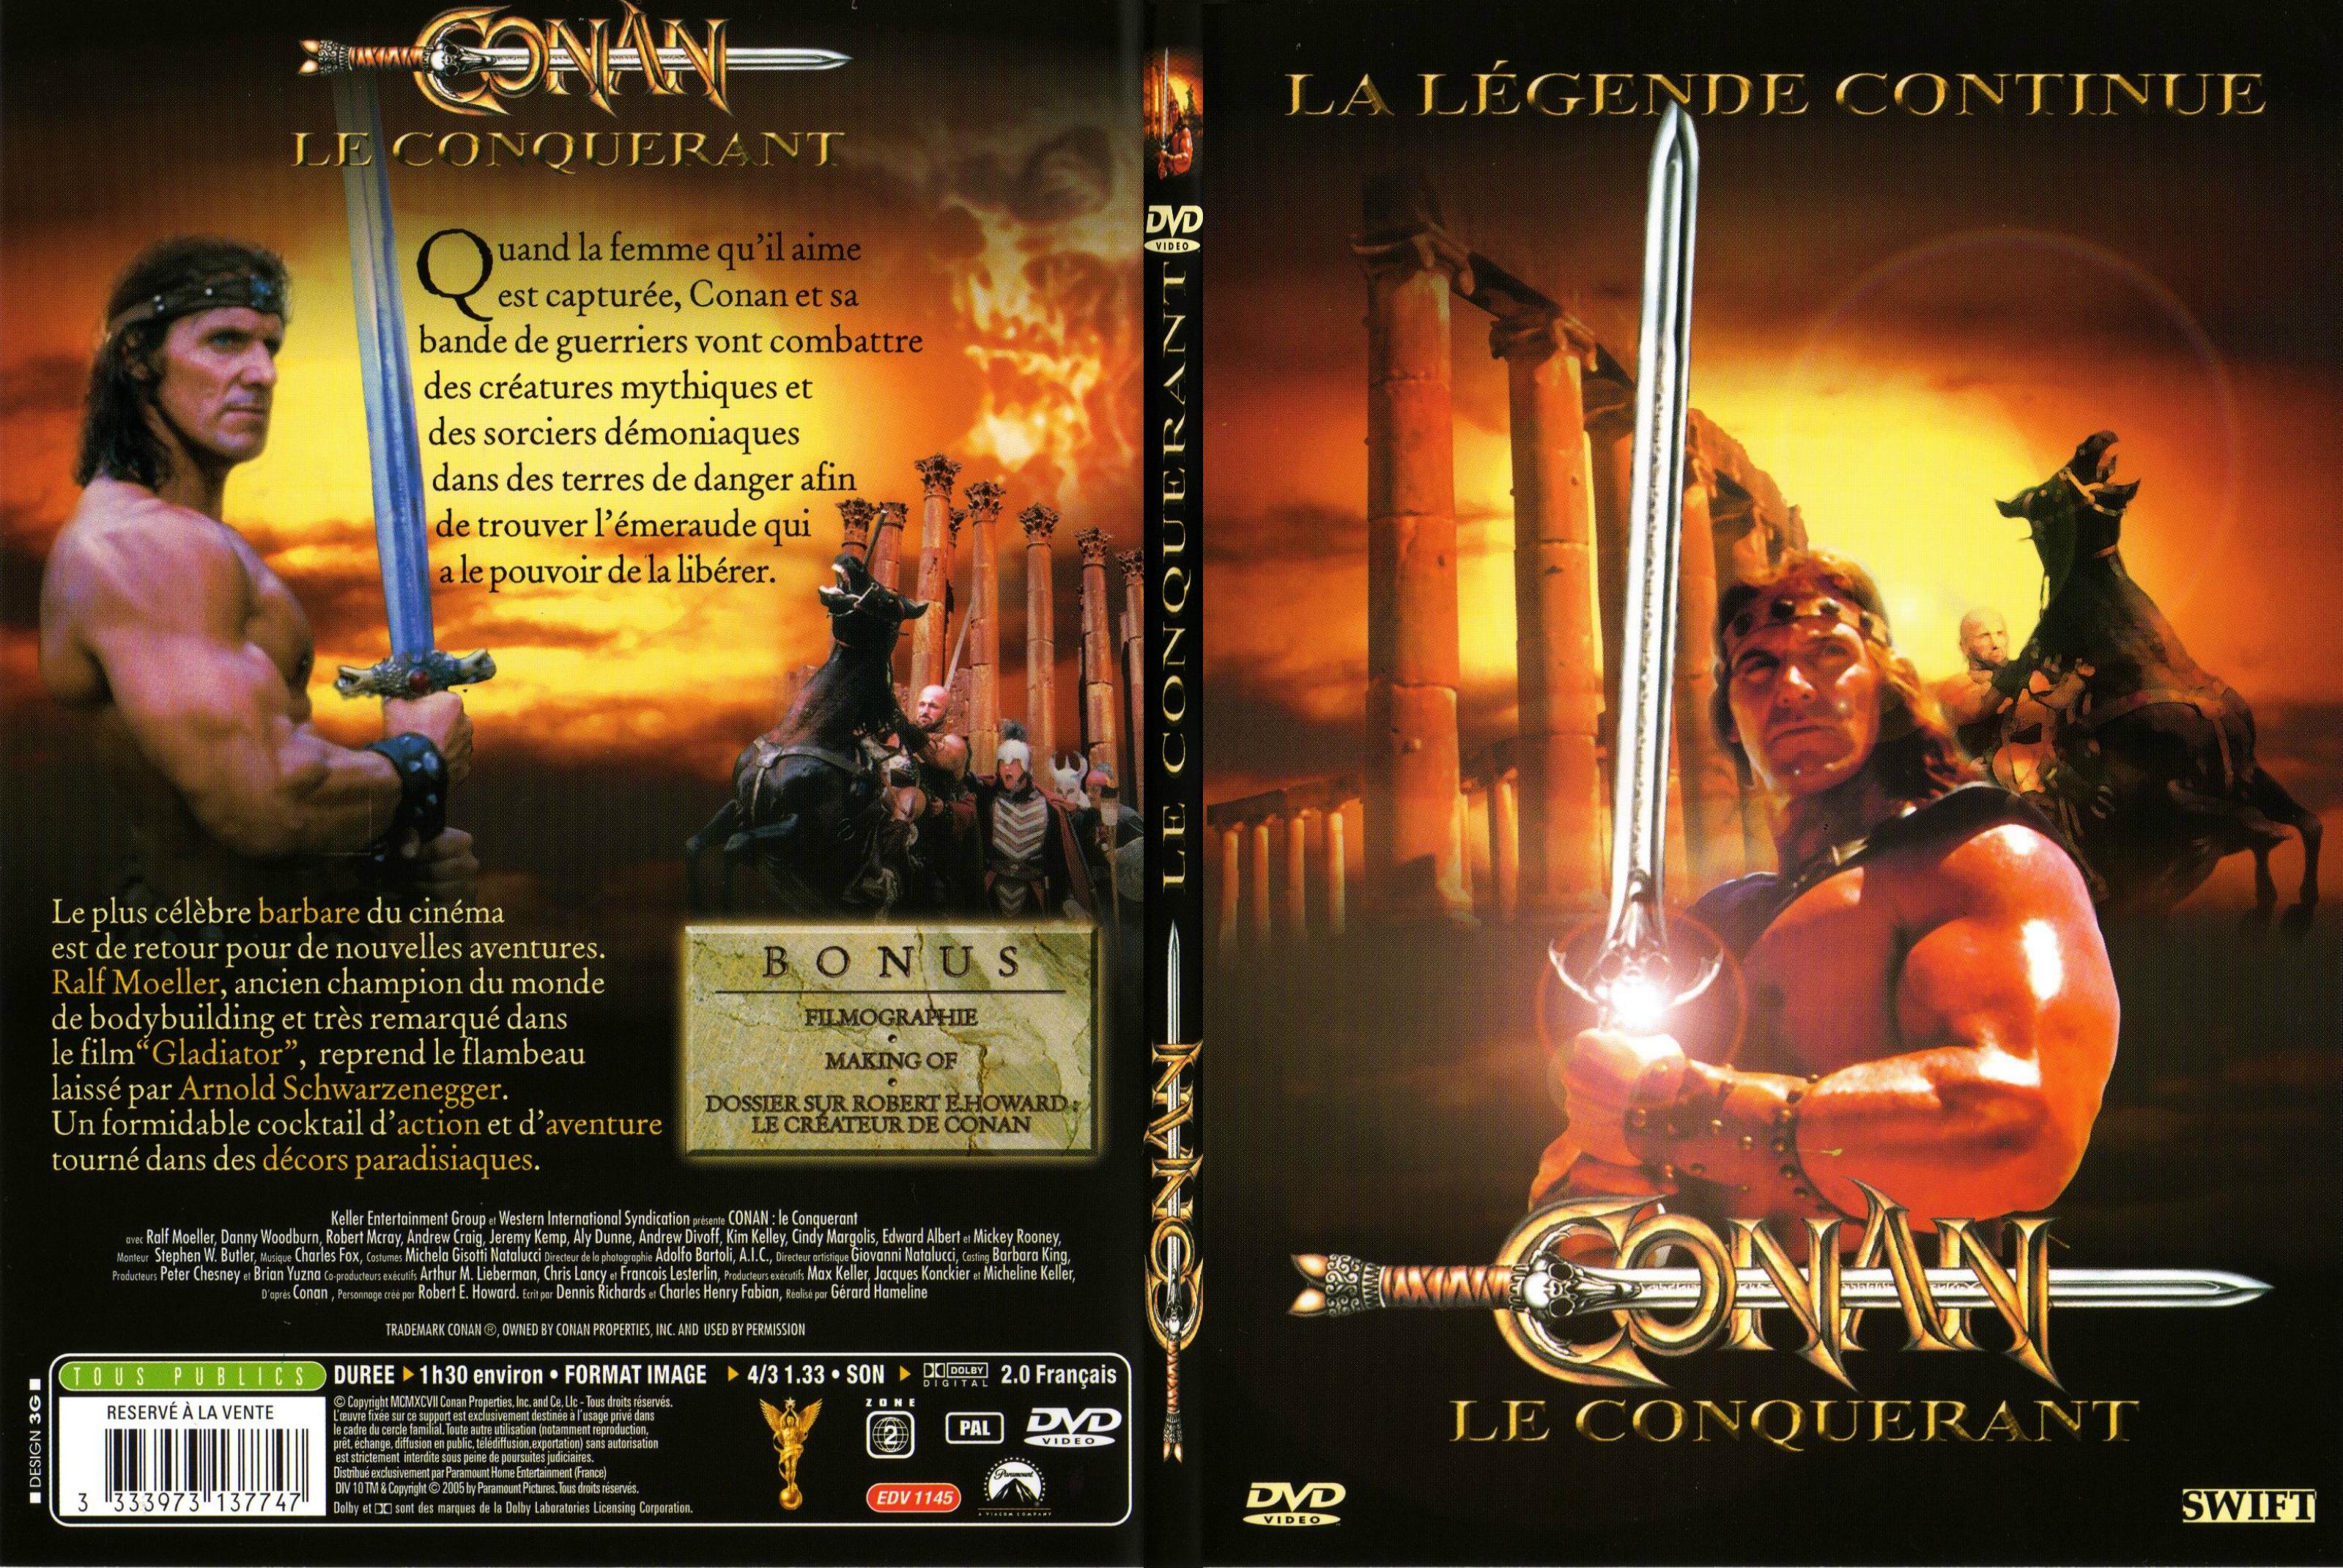 Jaquette DVD Conan le conquerant - SLIM